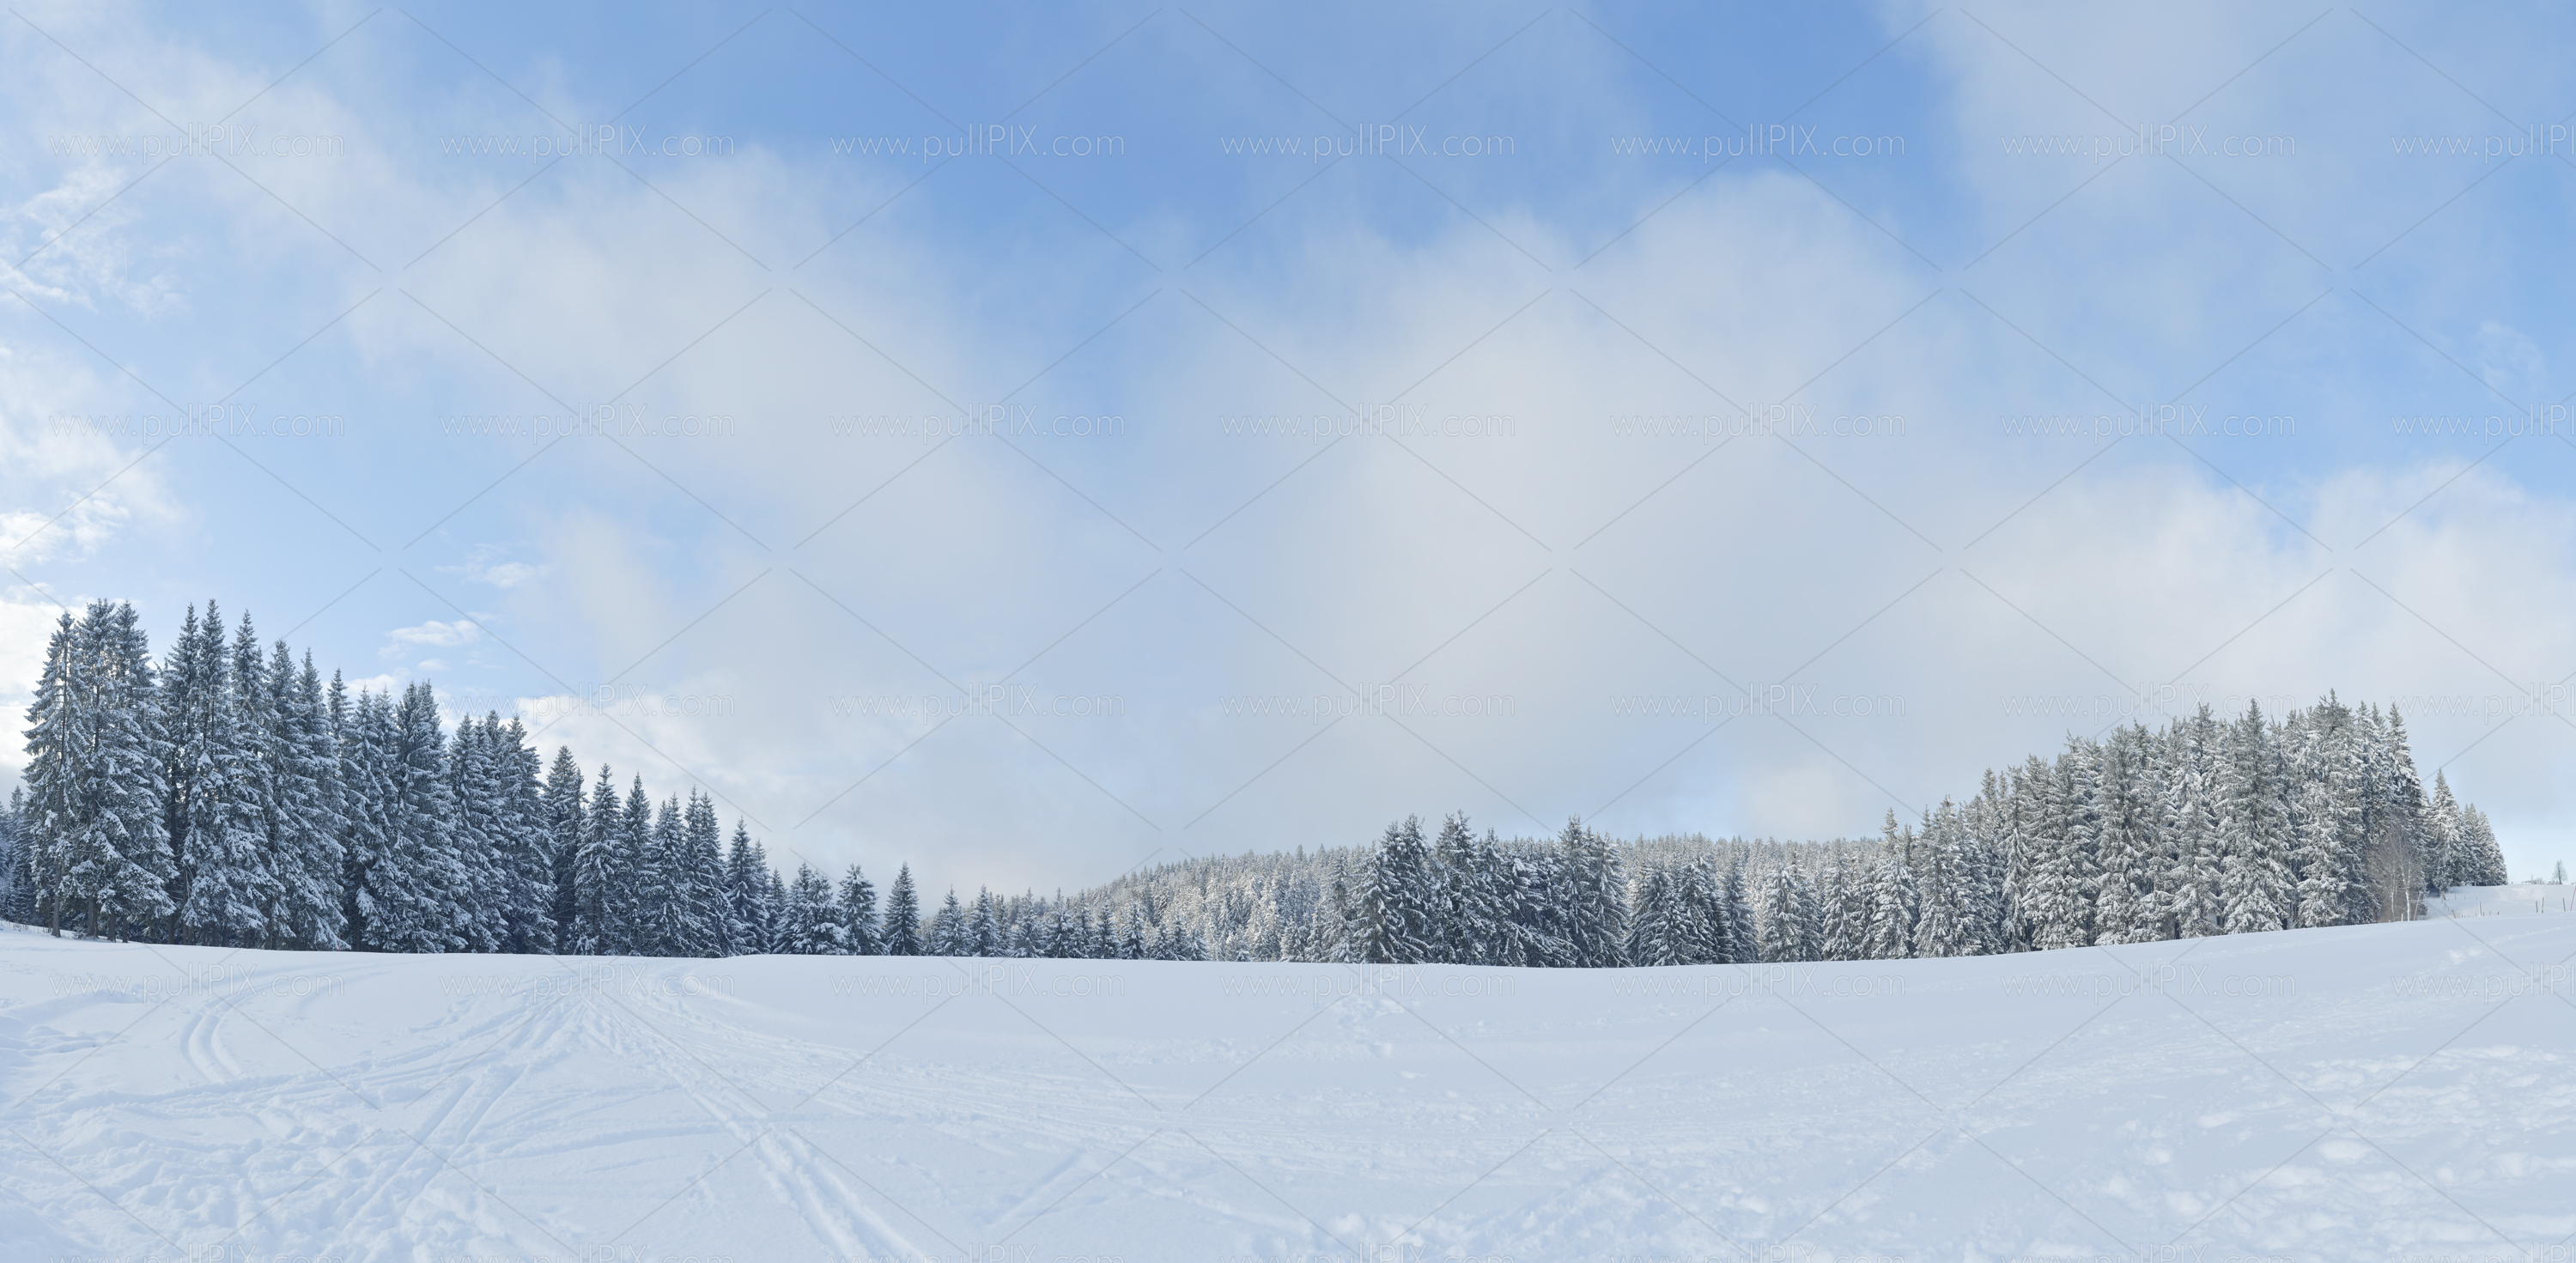 Preview winterliches allgaeu_3.jpg